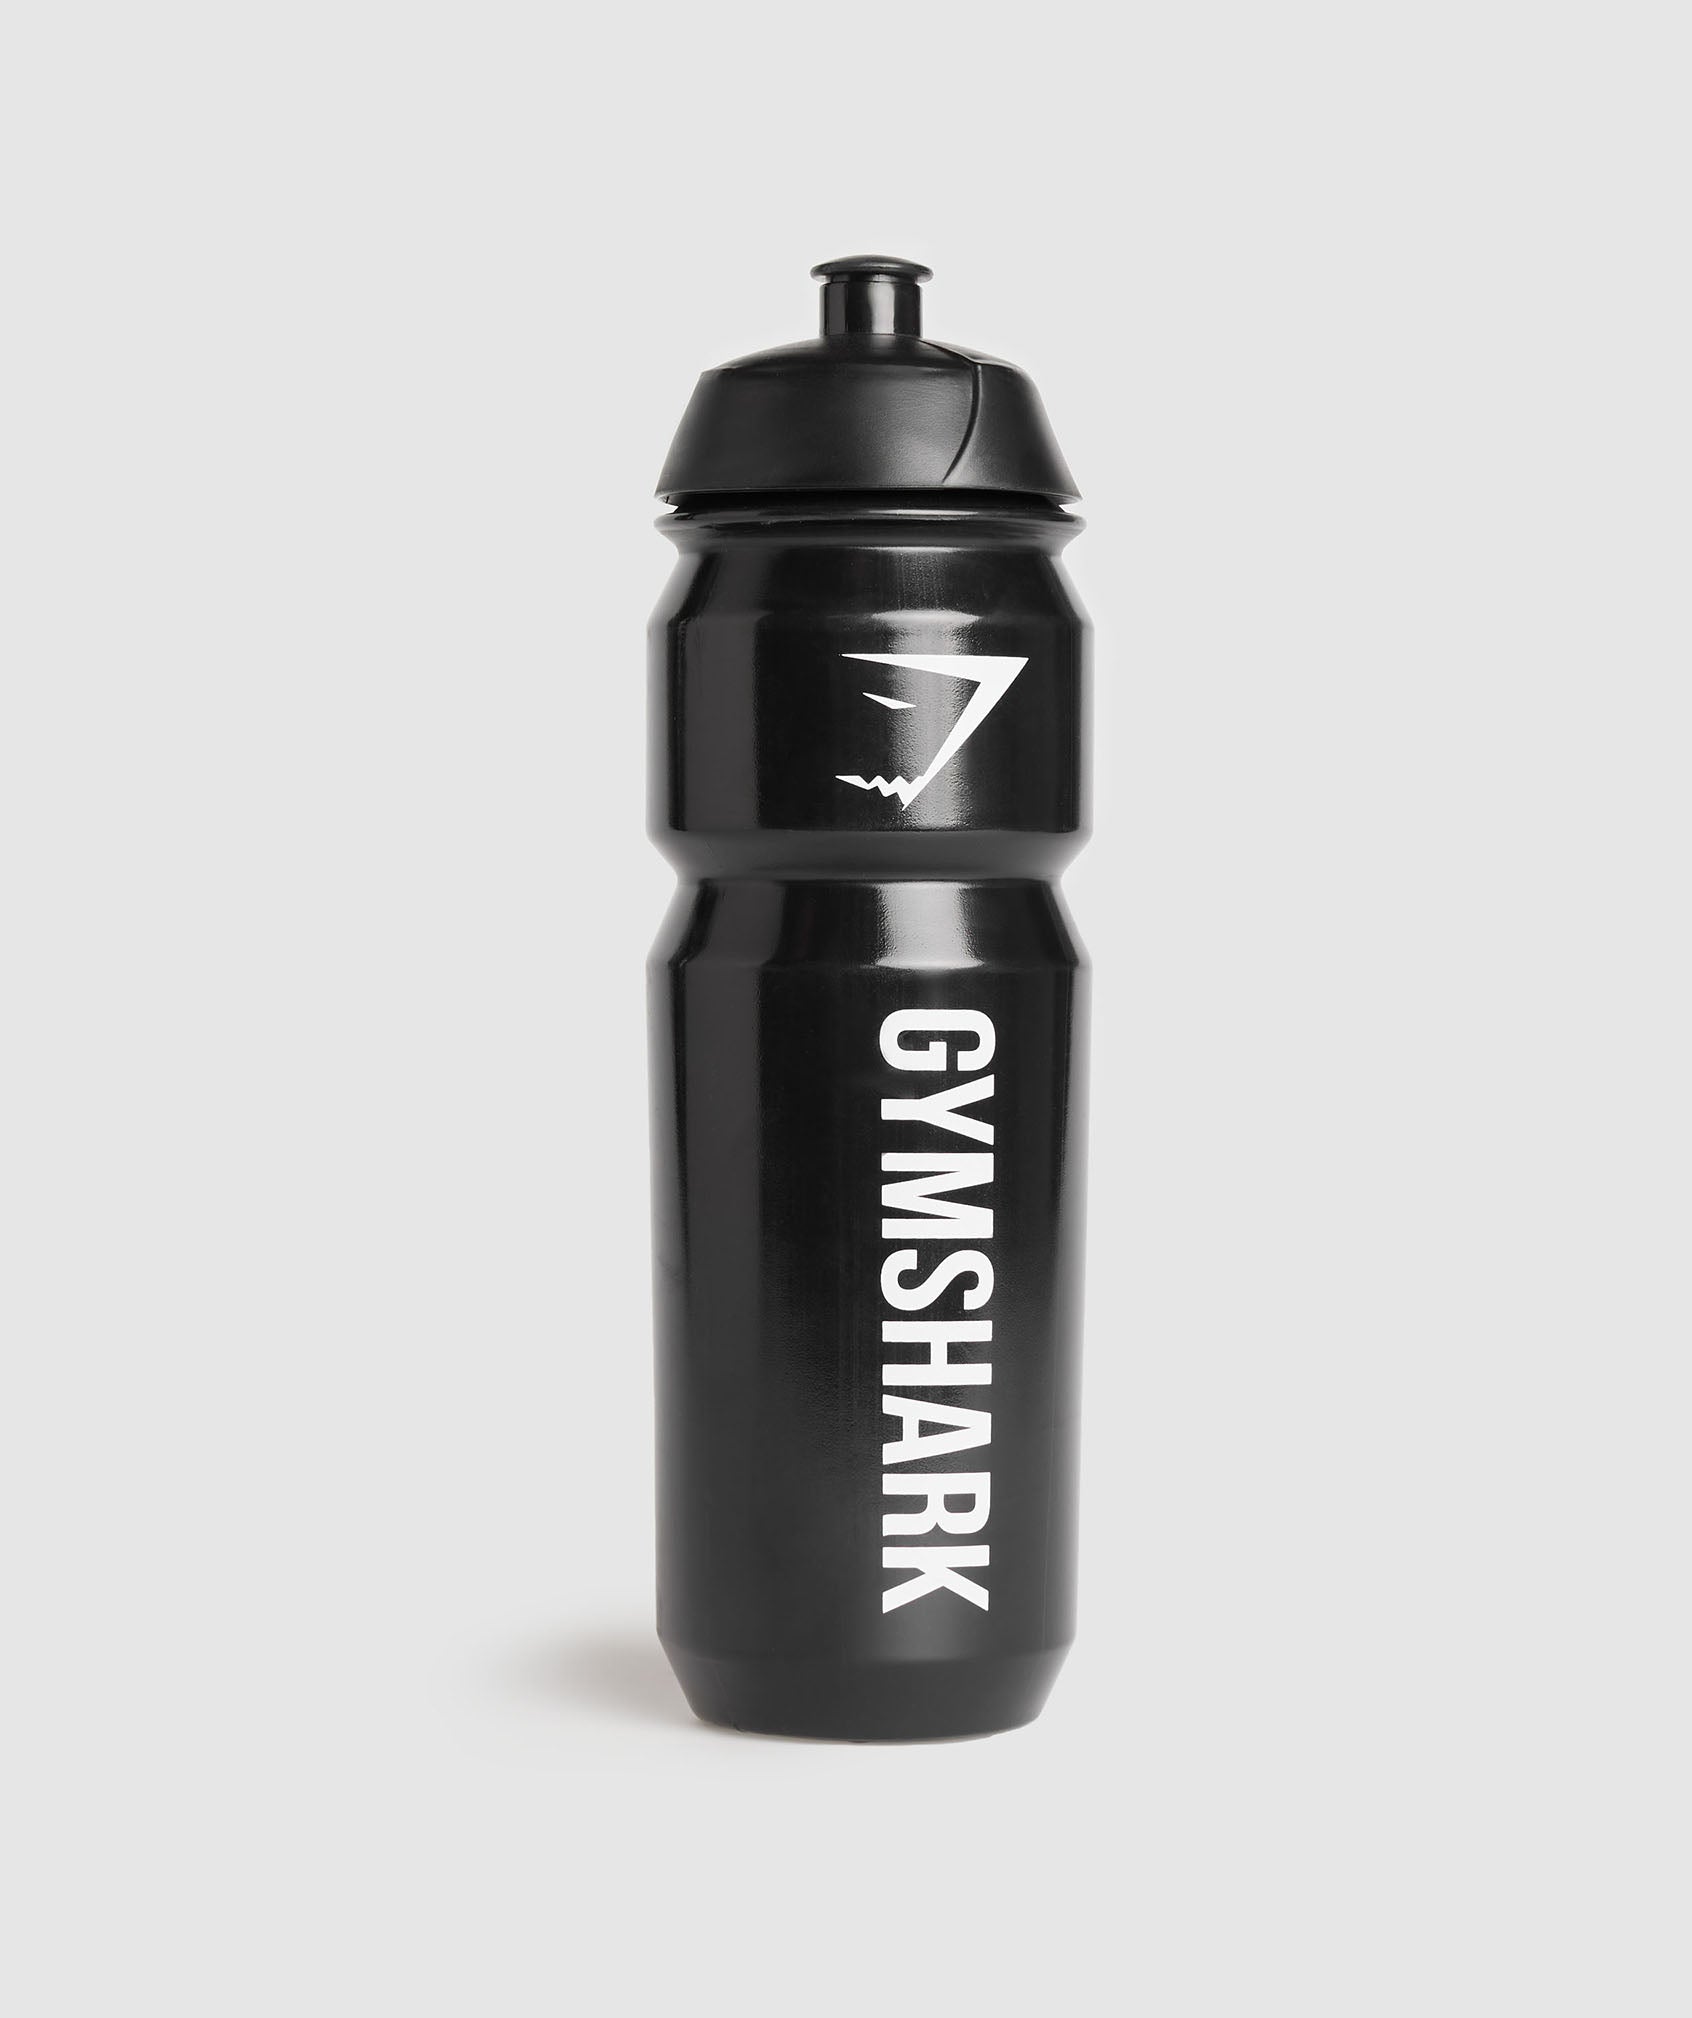 Gymshark Metal Shaker - Steel Grey